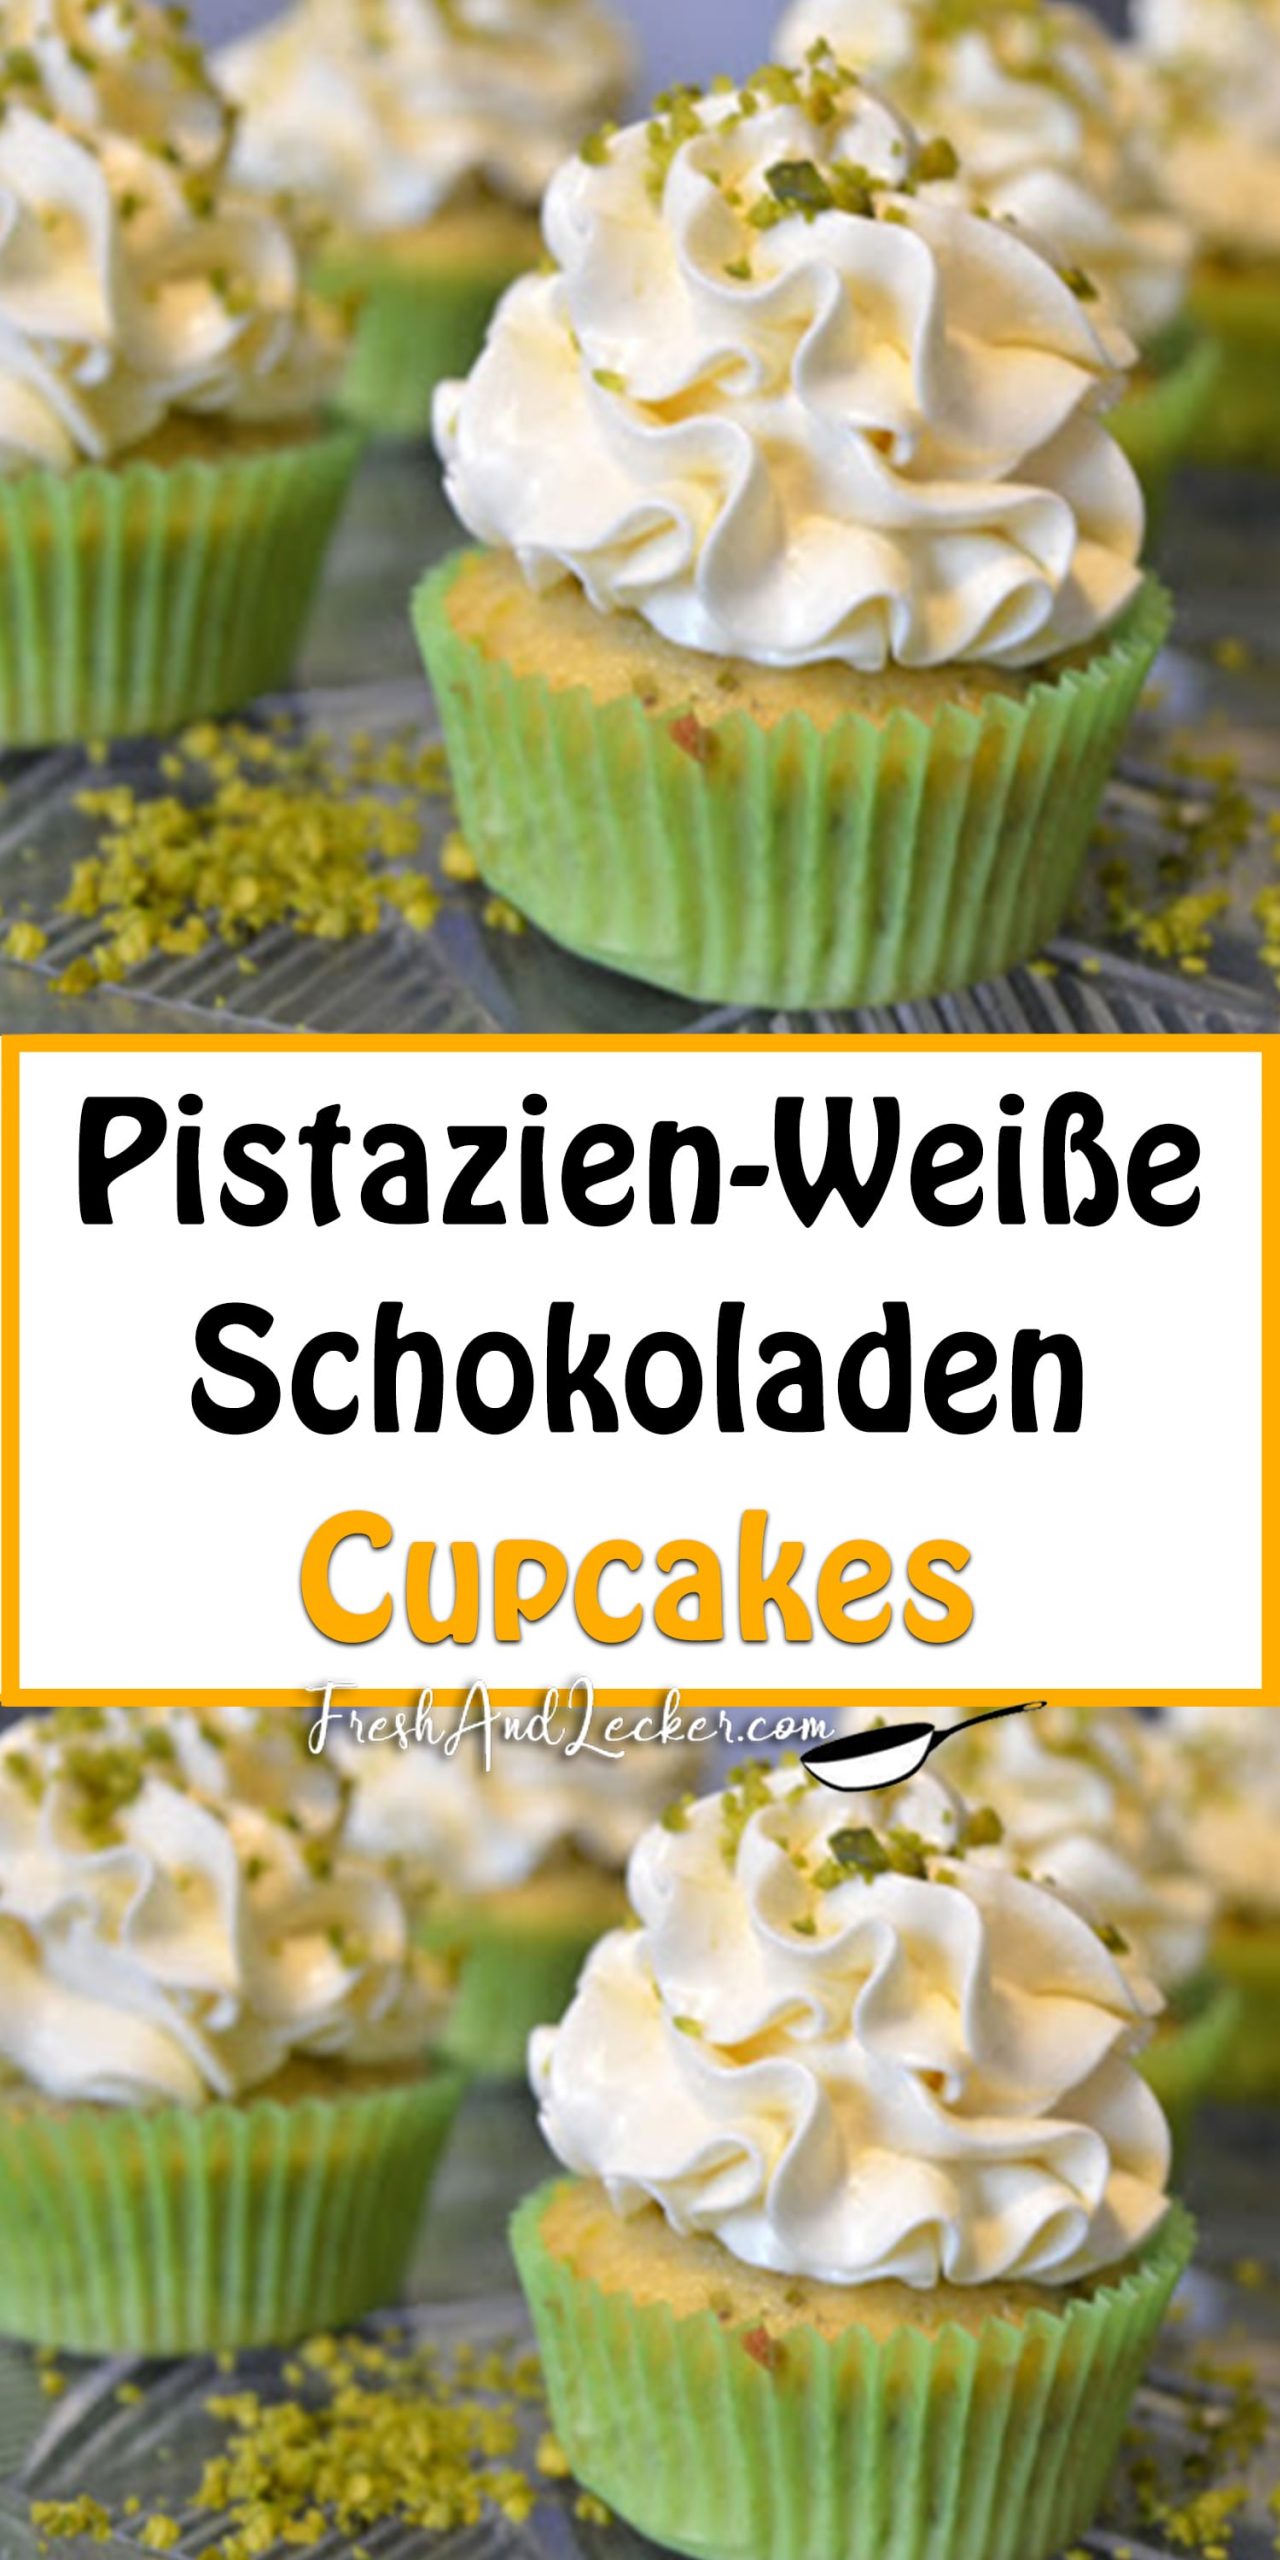 Pistazien-Weiße Schokoladen Cupcakes - Fresh Lecker